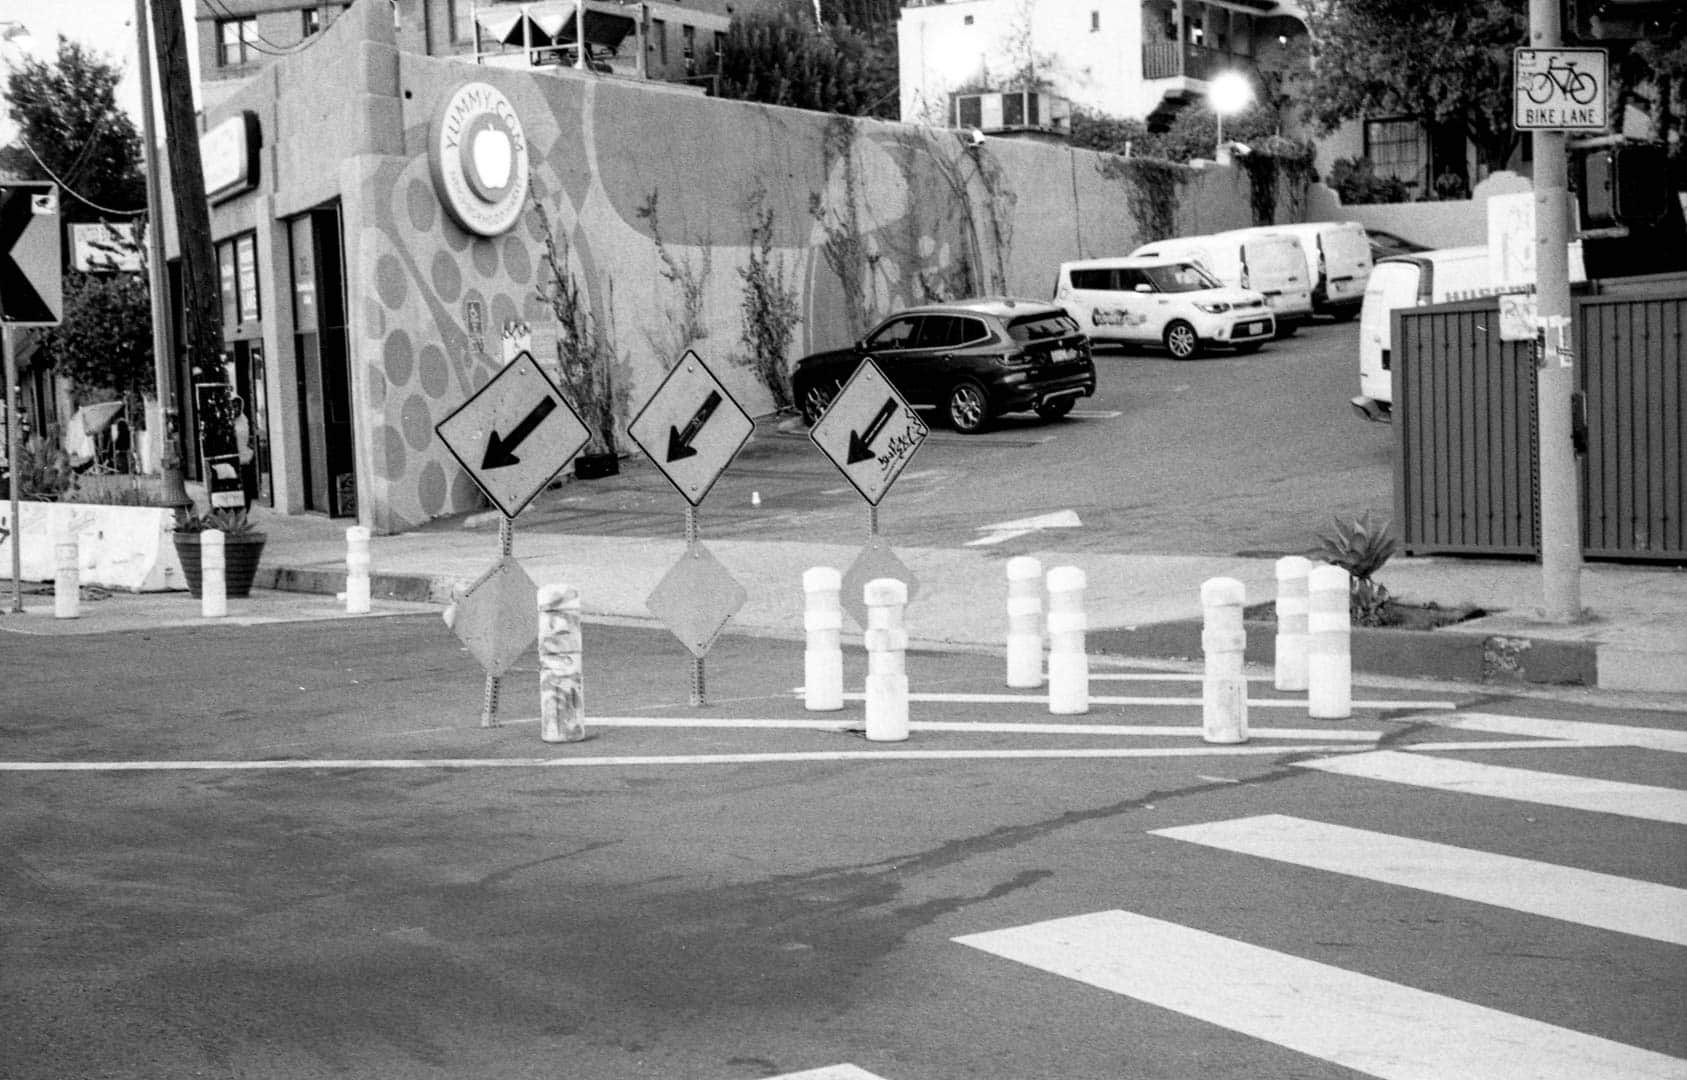 Excessive crosswalk signage in LA